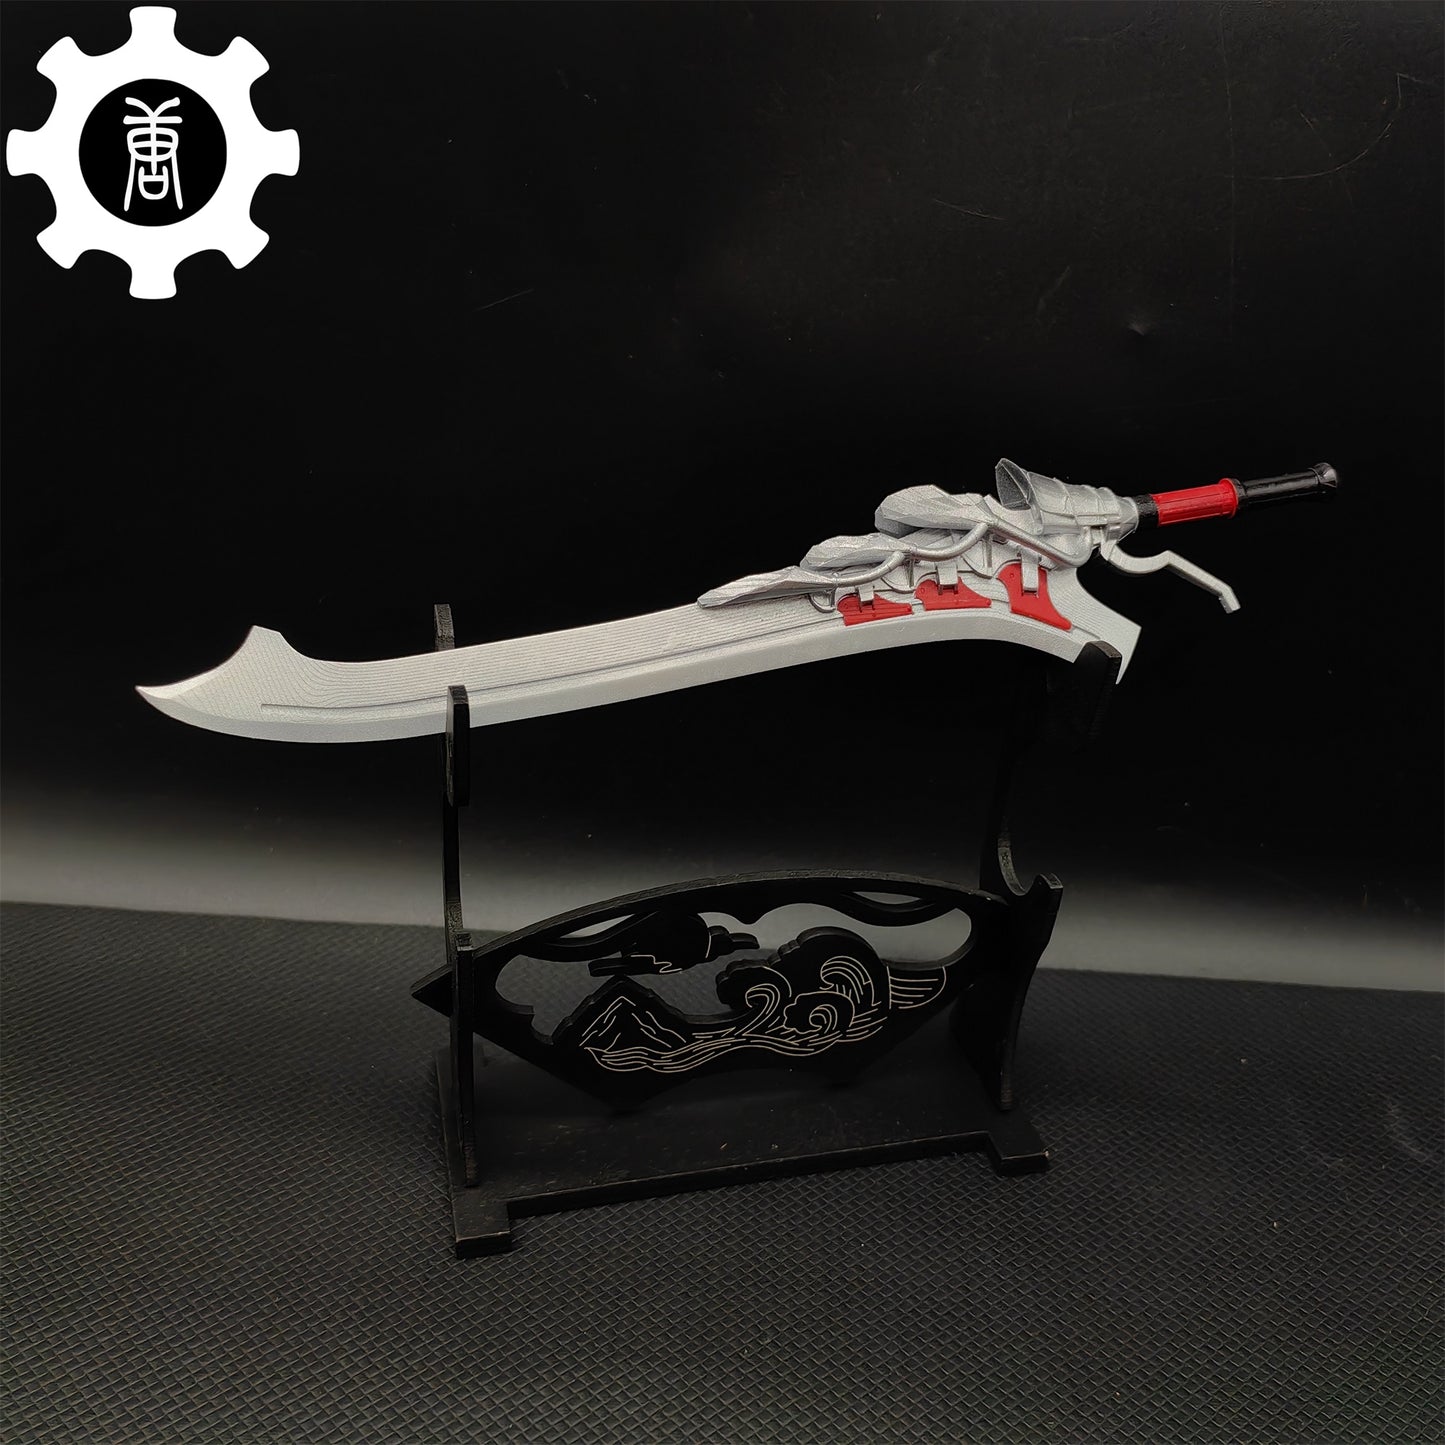 3D Printed 1: 6 Scale Nero Red Queen Sword DMC Display Prop